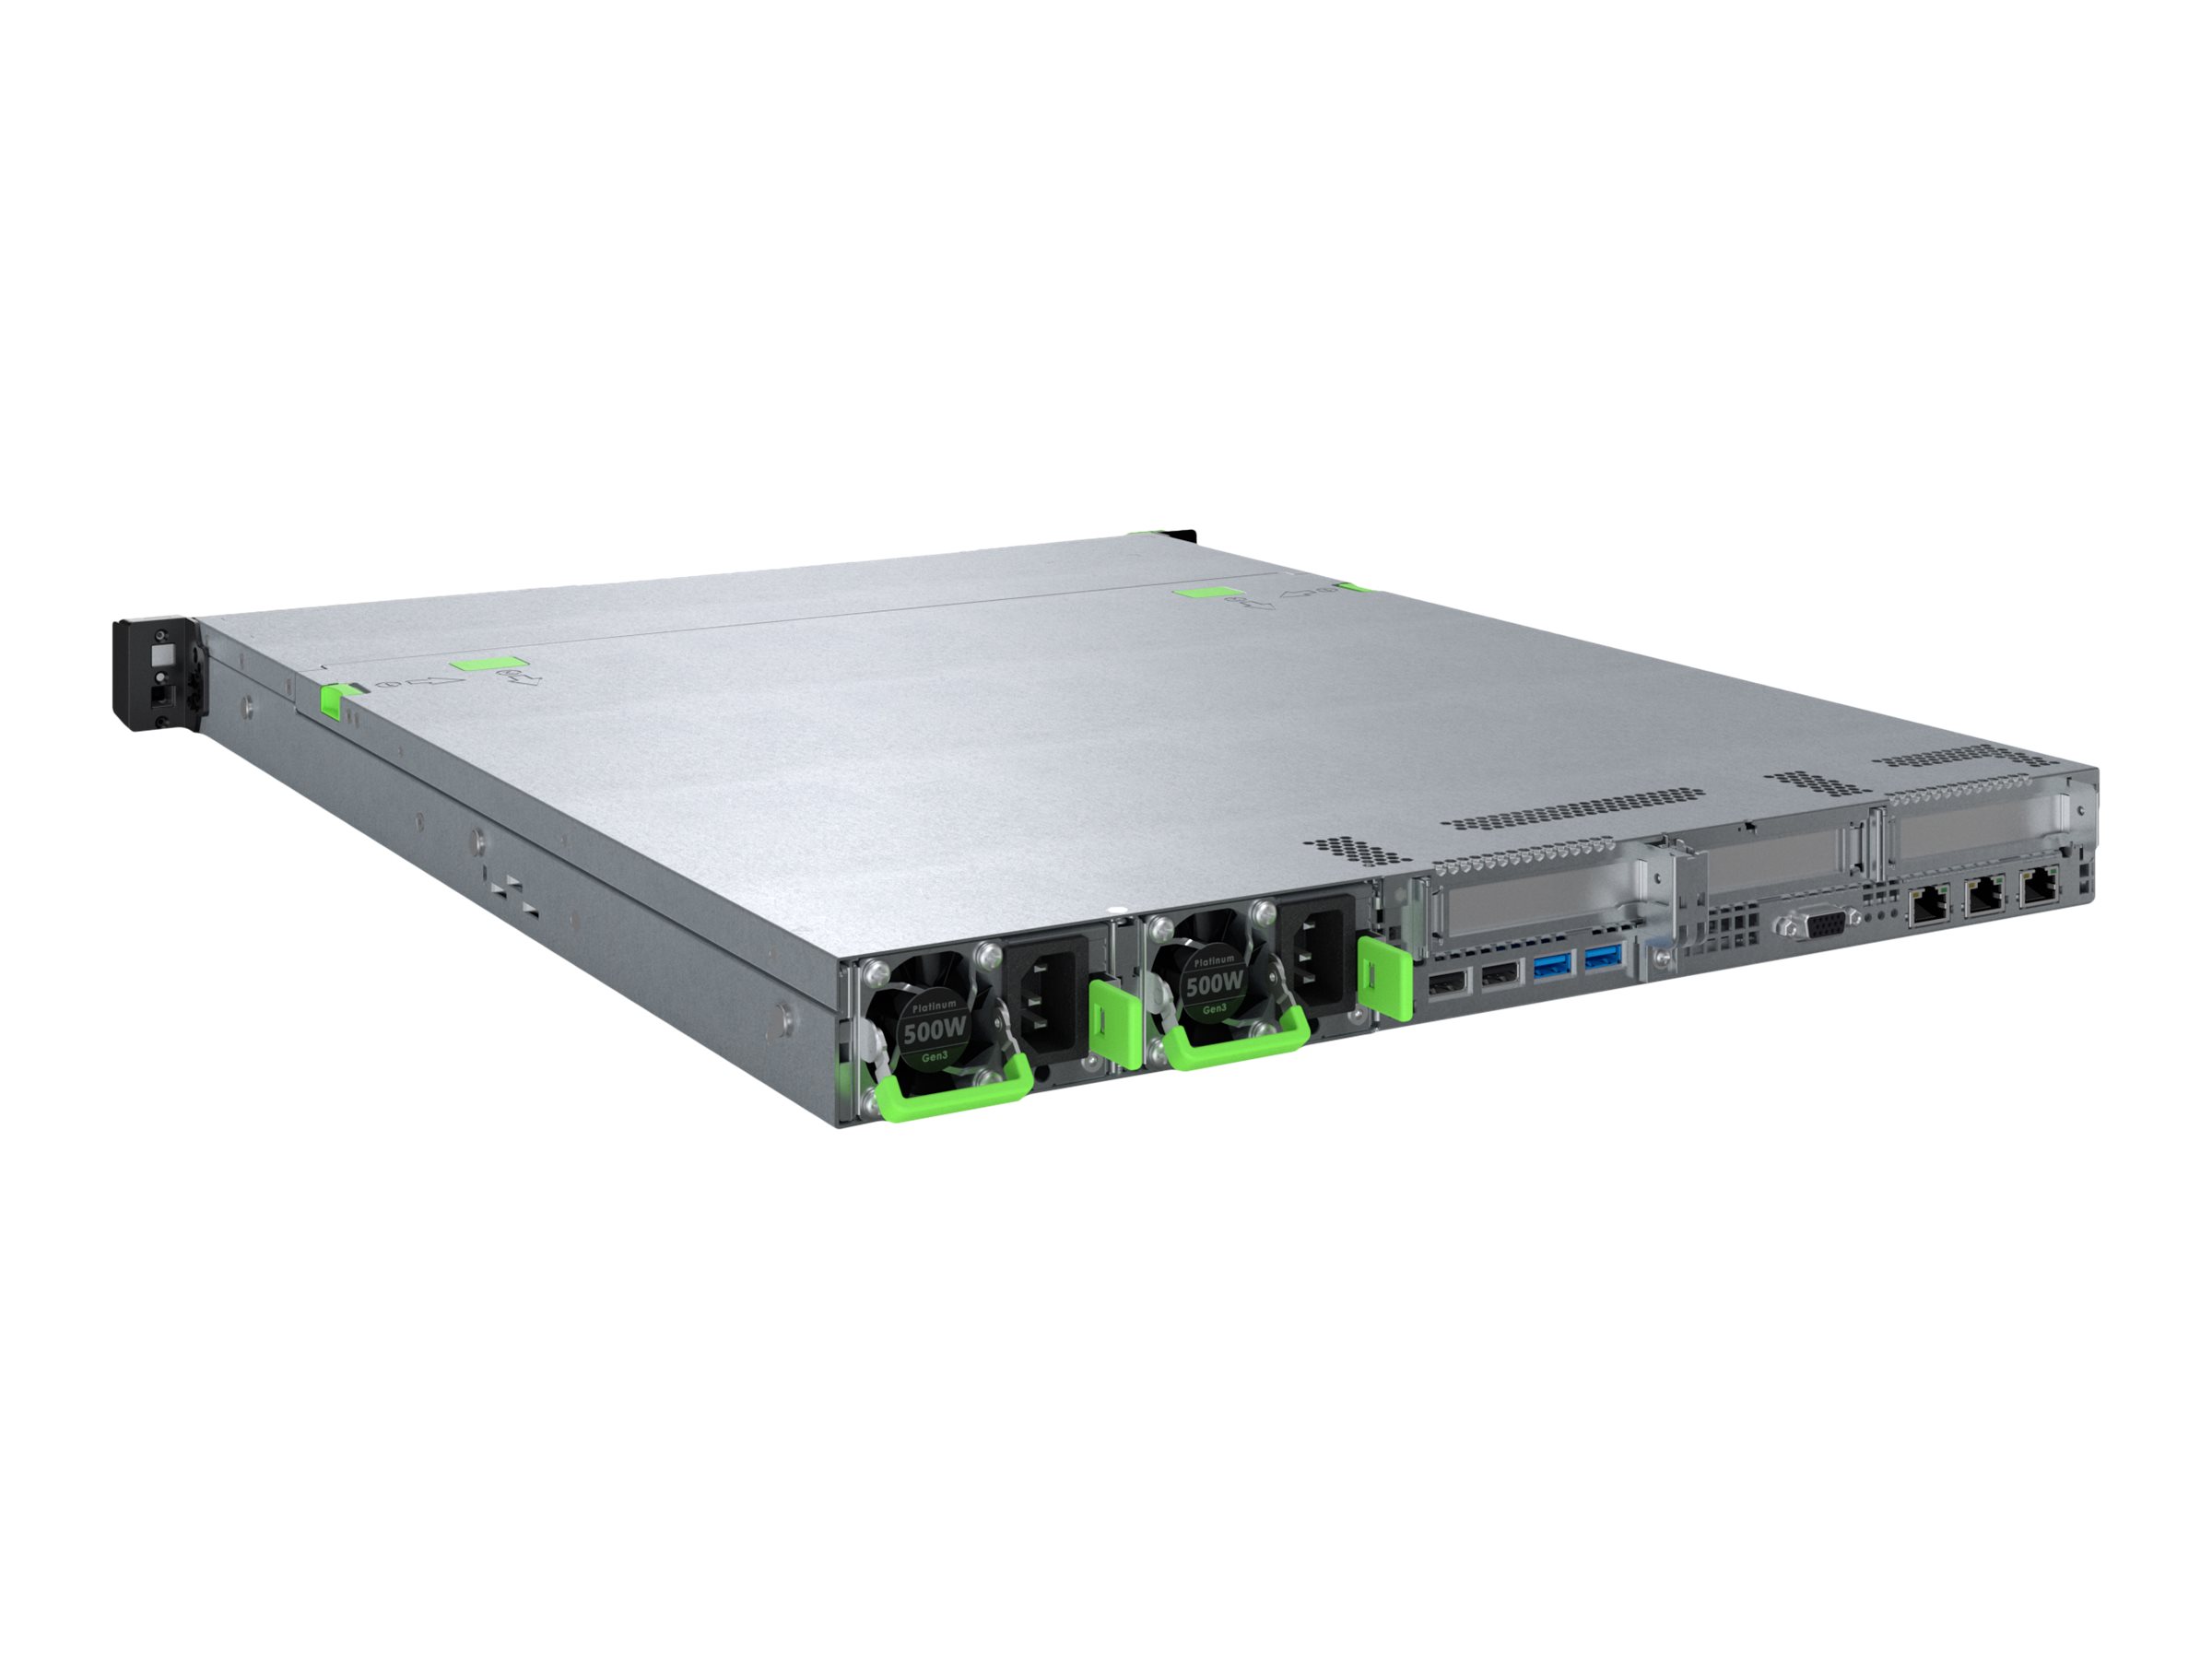 Fujitsu PRIMERGY RX1330 M5 - Serveur - Montable sur rack - 1U - pas de processeur - RAM 0 Go - aucun disque dur - Gigabit Ethernet - moniteur : aucun - VFY:R1335SC071IN - Serveurs rack